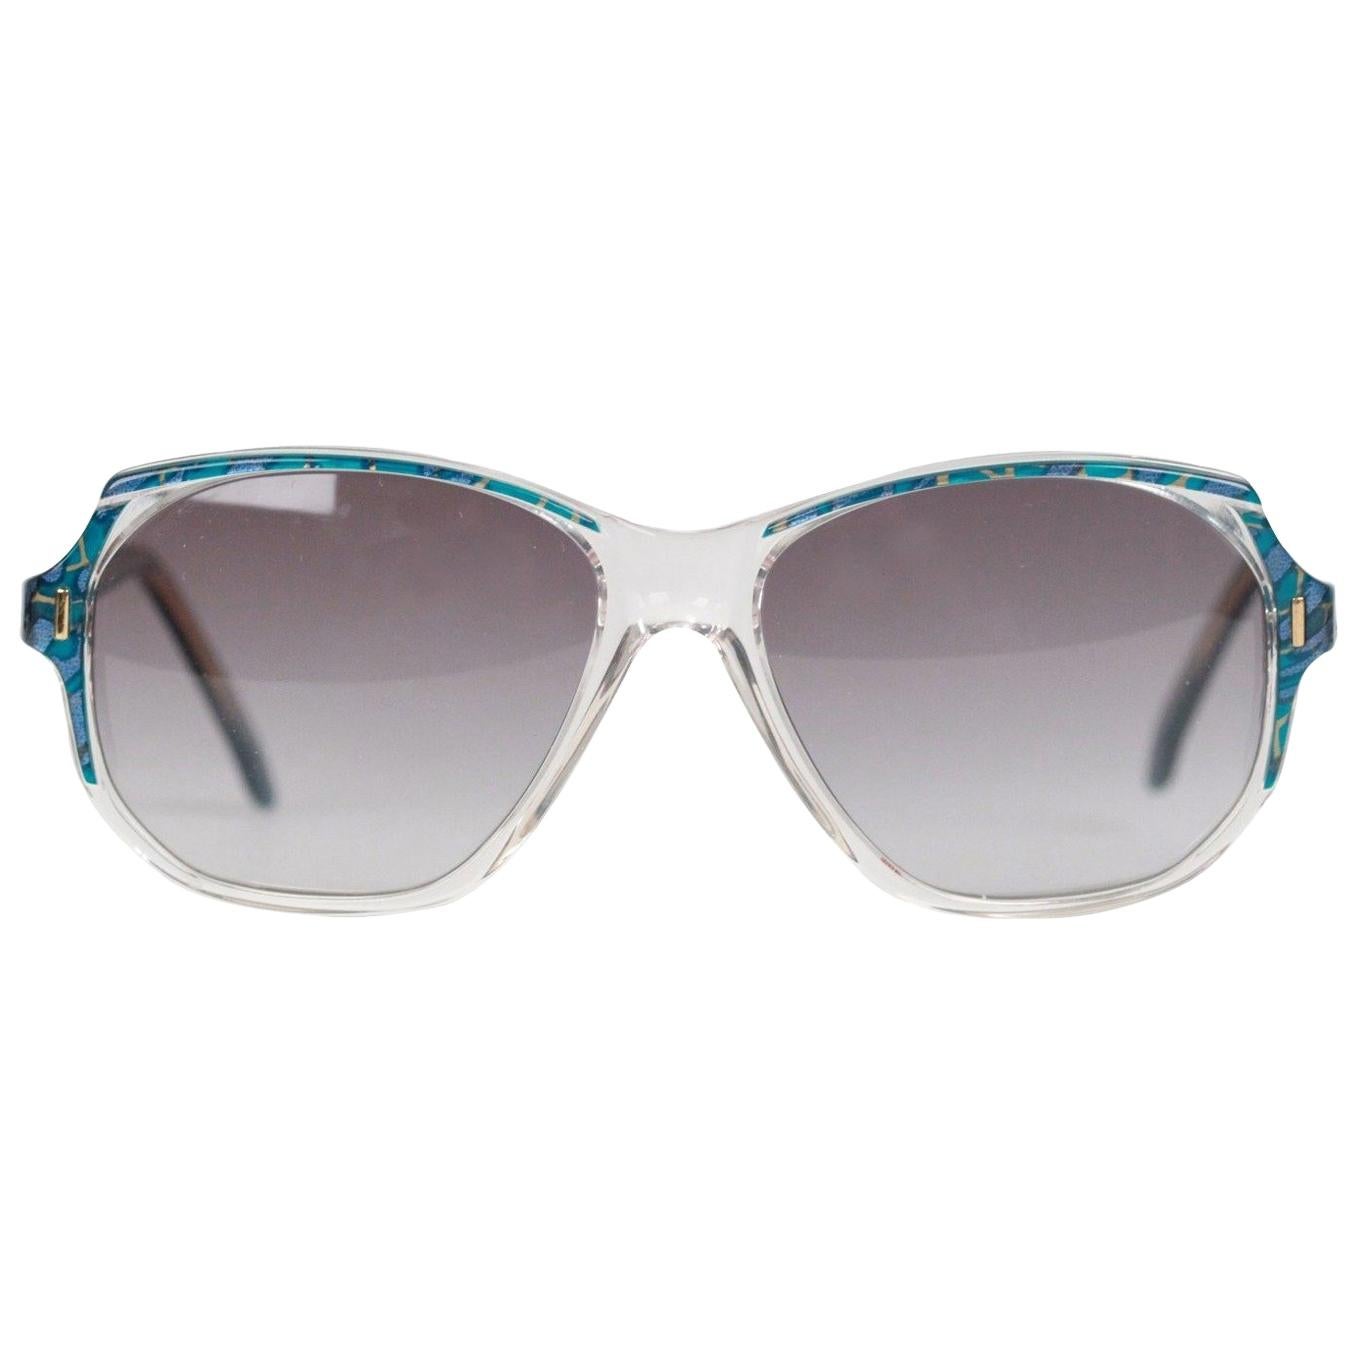 Yves Saint Laurent Vintage Marbled Sunglasses Mod. Salamine